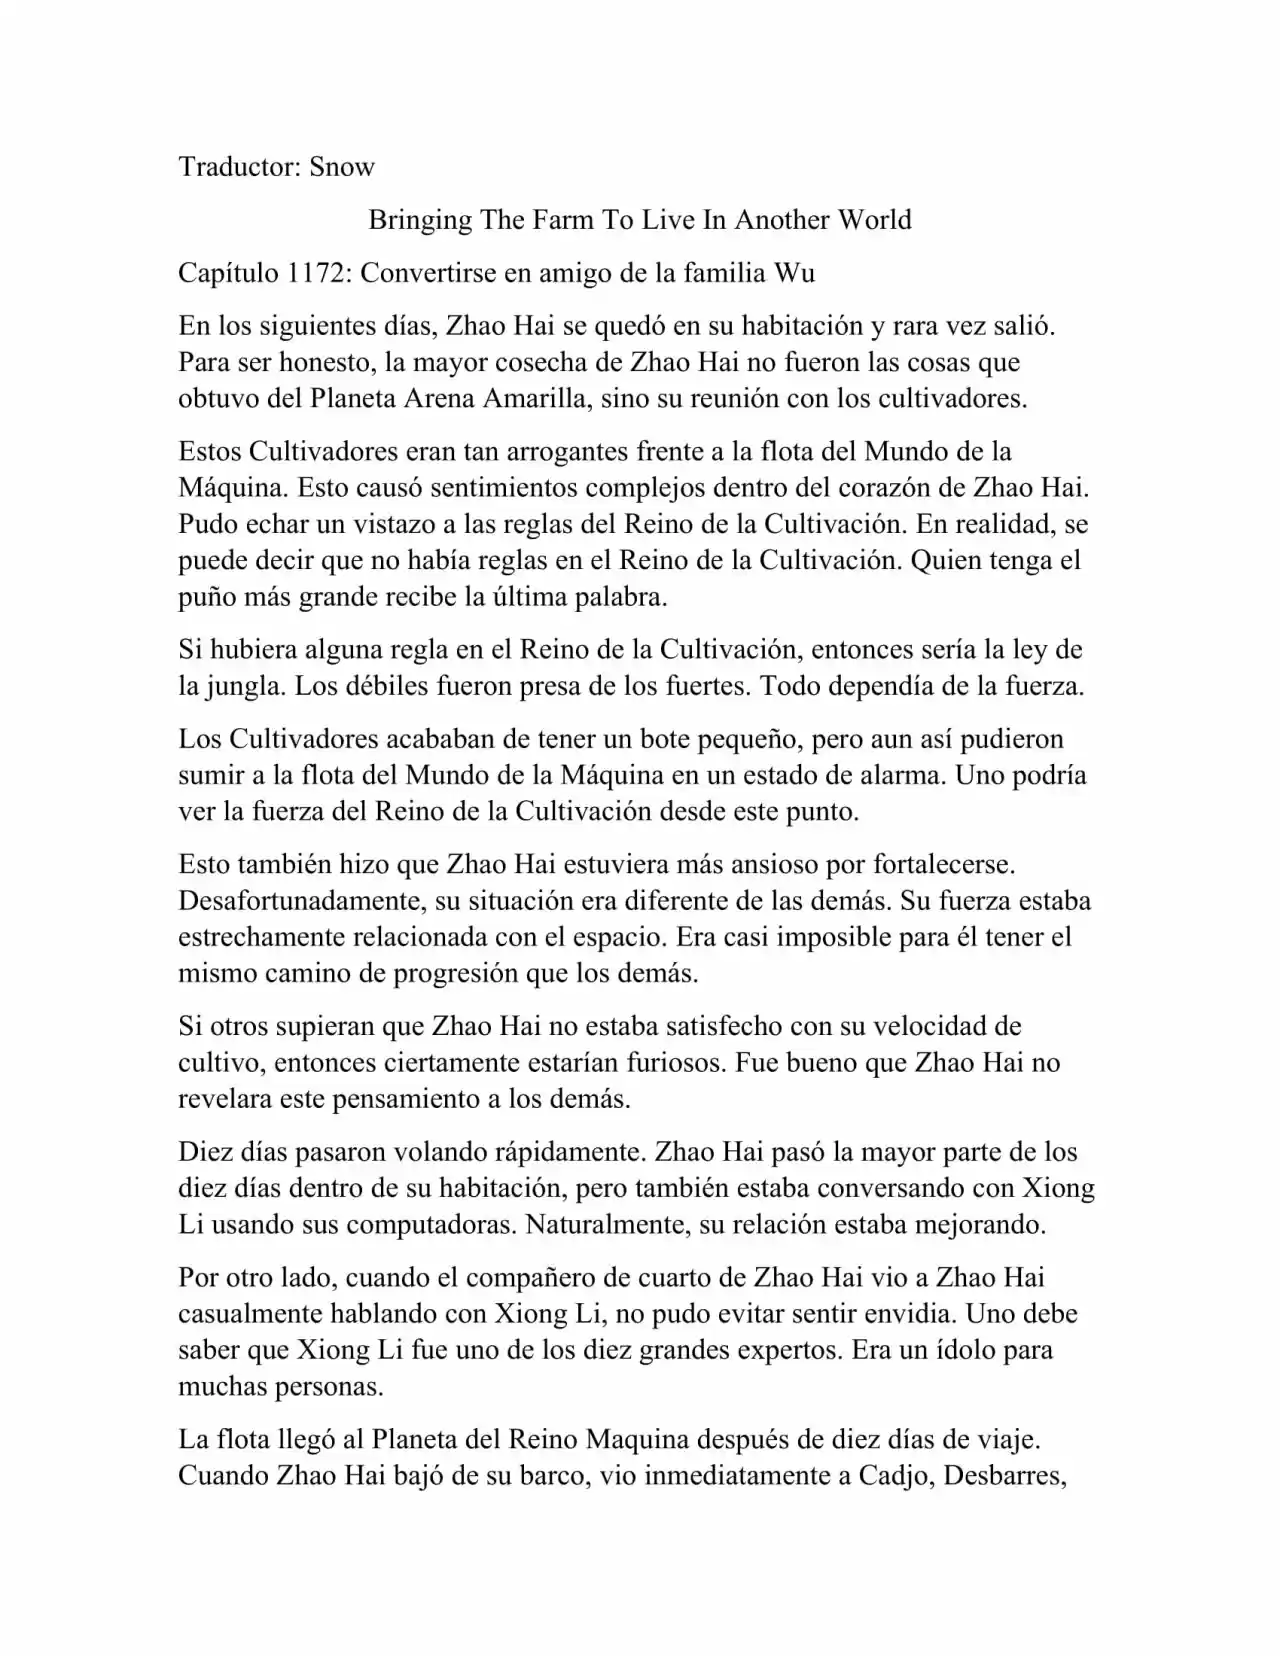 Llevando La Granja Para Vivir En Otro Mundo (Novela: Chapter 1172 - Page 1